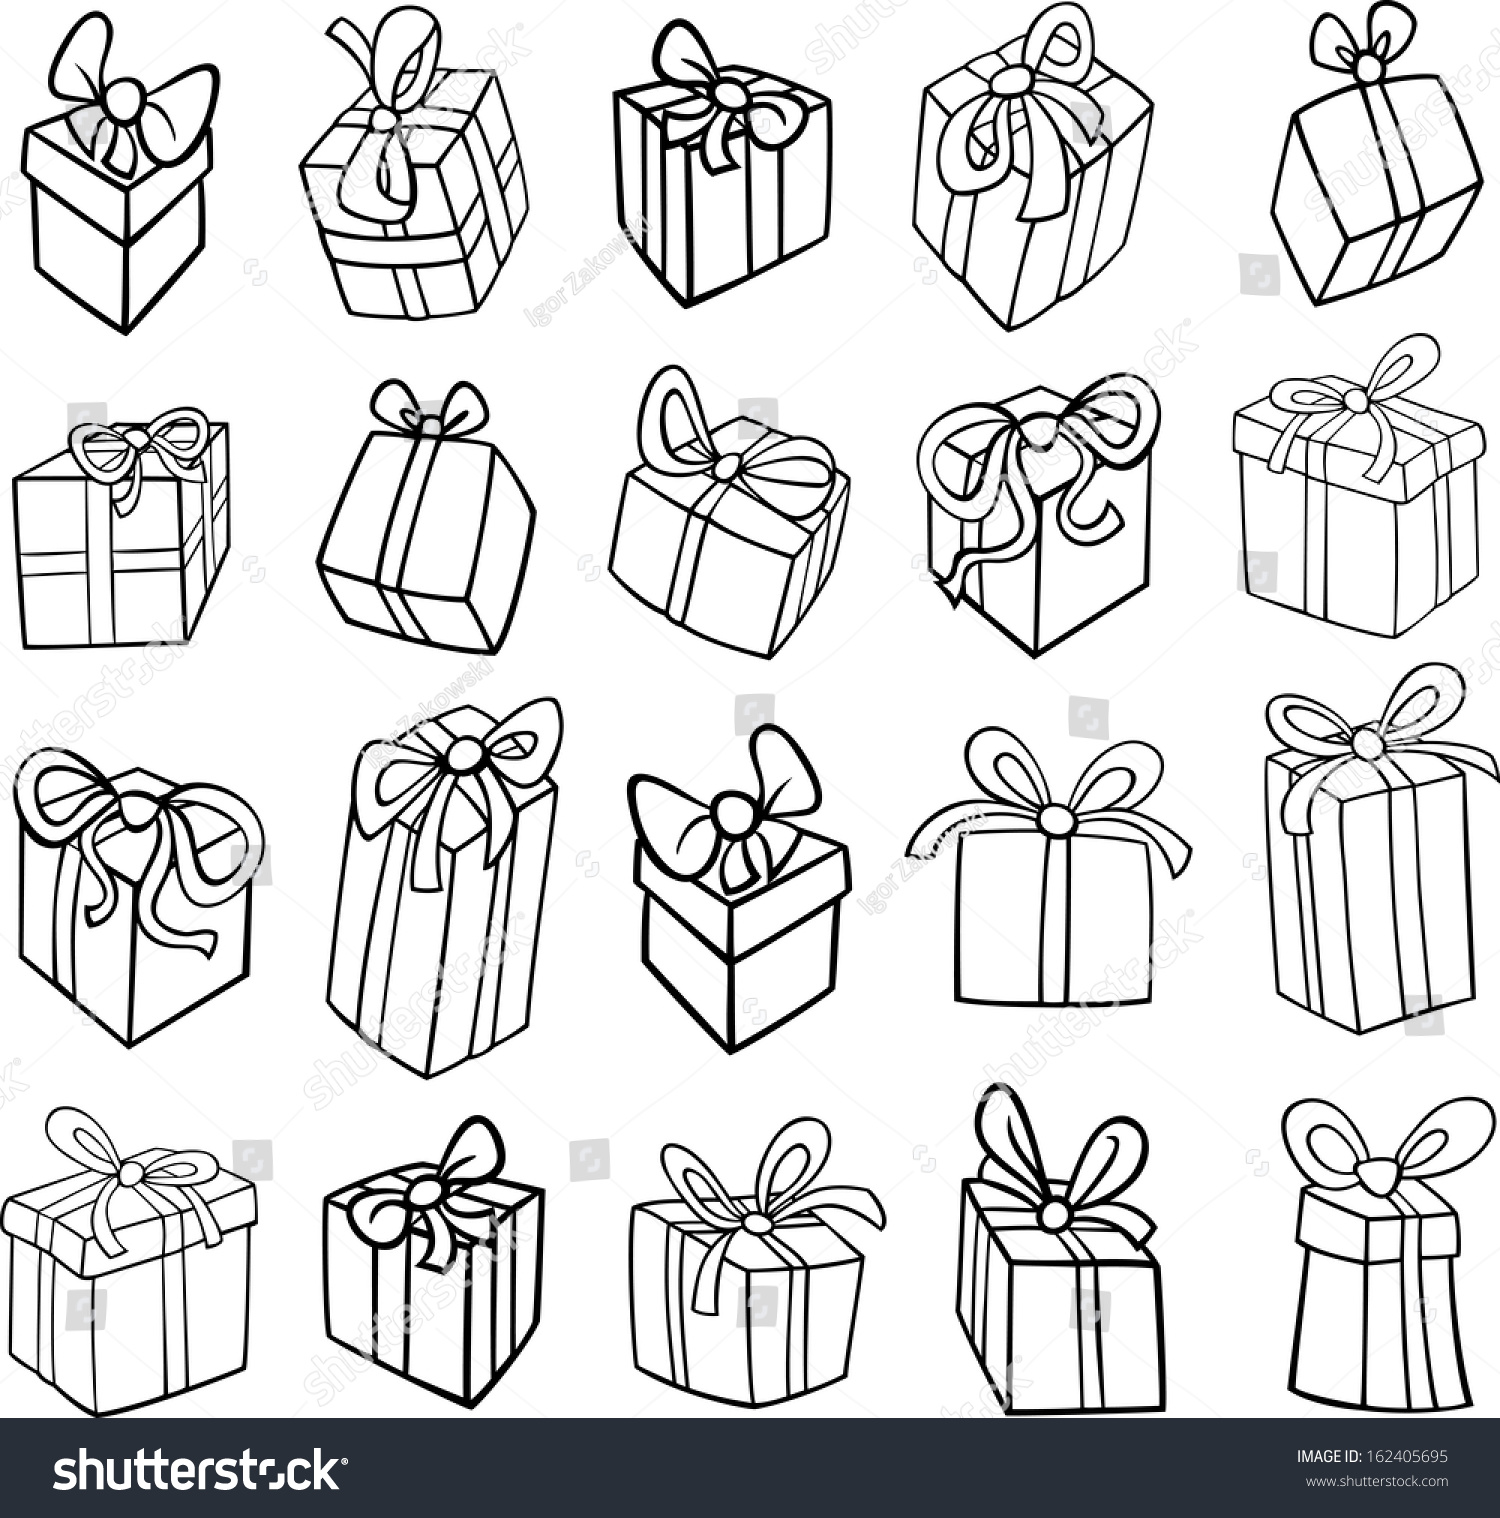 Black White Cartoon Vector Illustration Christmas Stock Vector 162405695 - Shutterstock